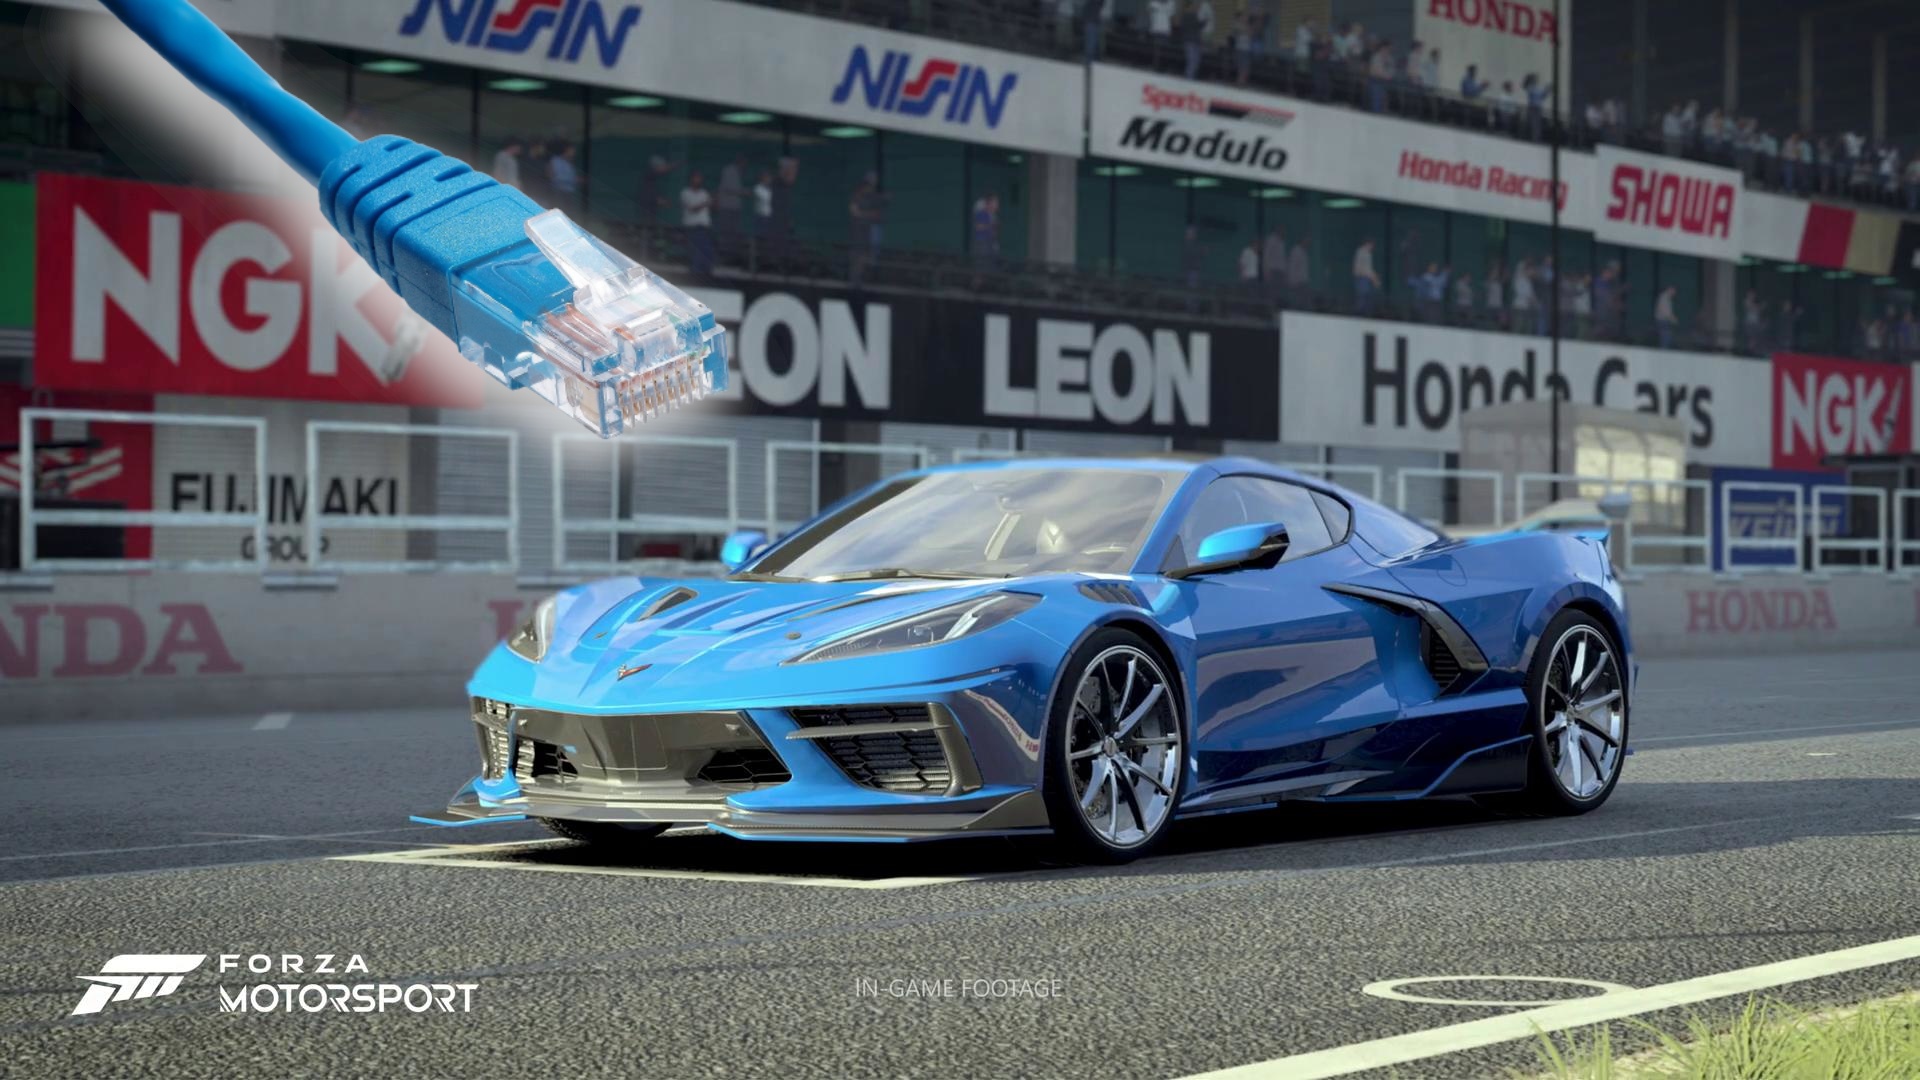 #Kann man Forza Motorsport offline spielen? Ja, aber es gibt einen großen Haken dabei